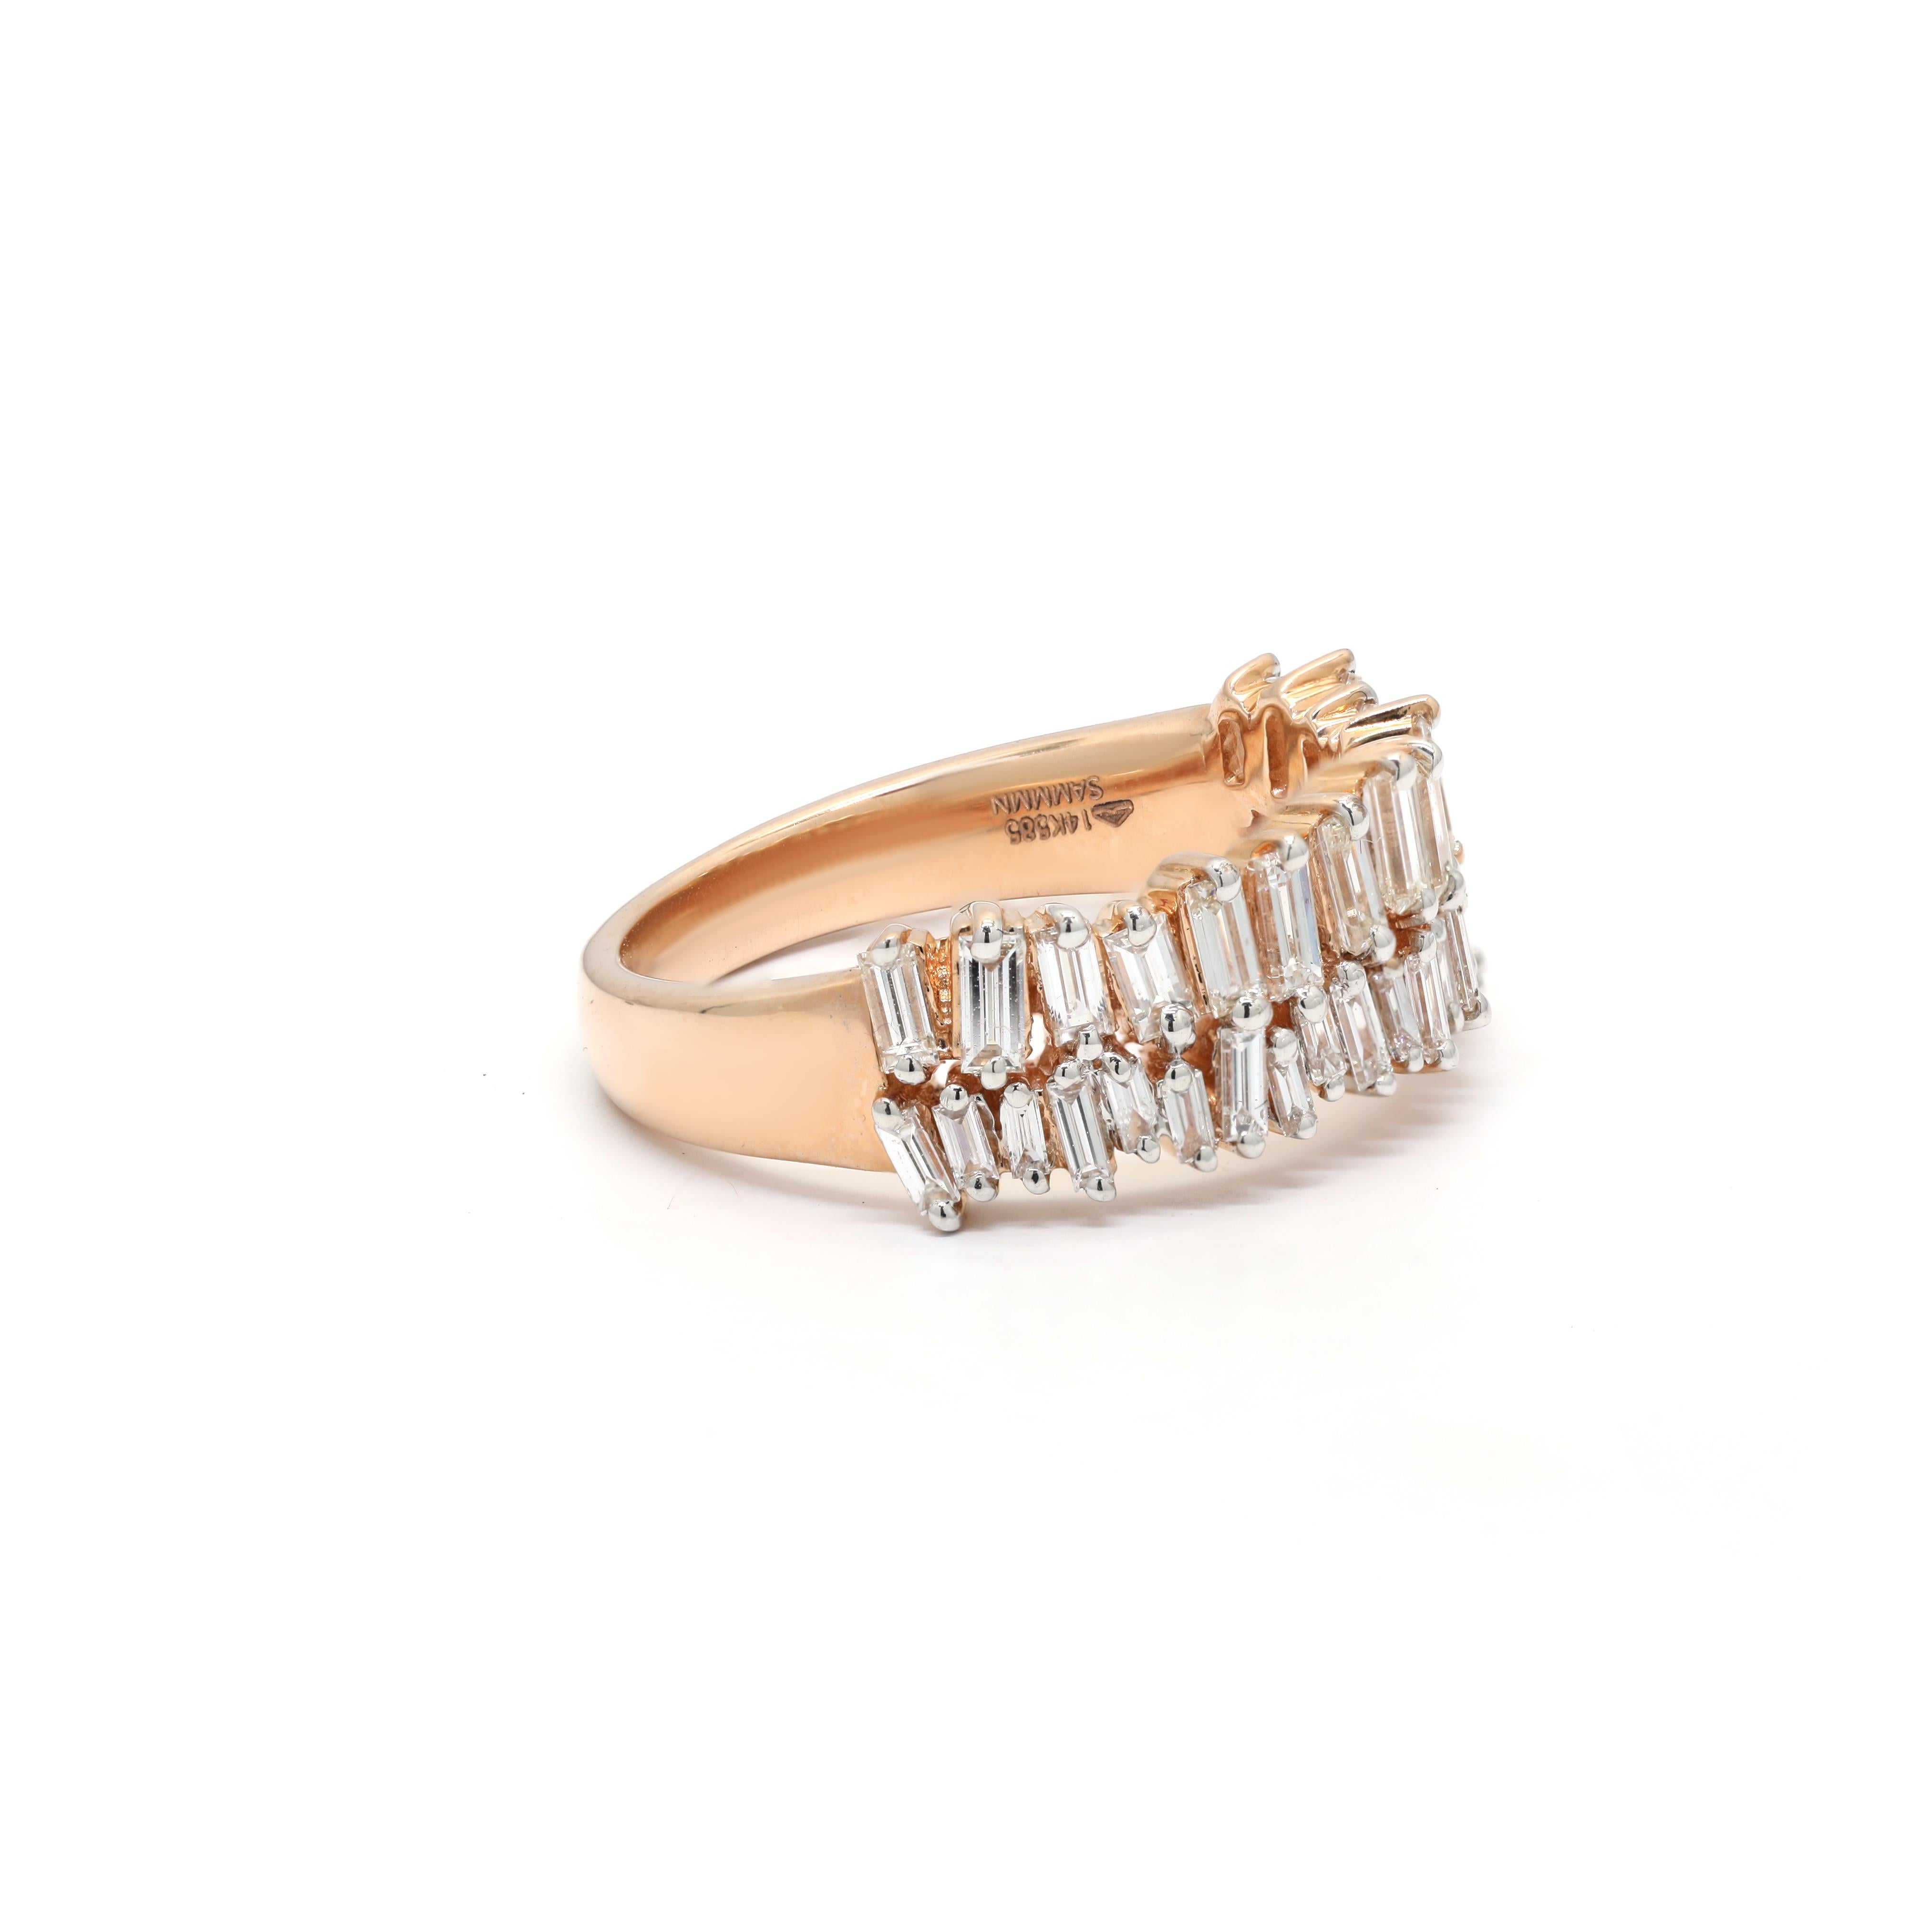 For Sale:  1 Carat Diamond Engagement Band Ring in 14 Karat Rose Gold 4